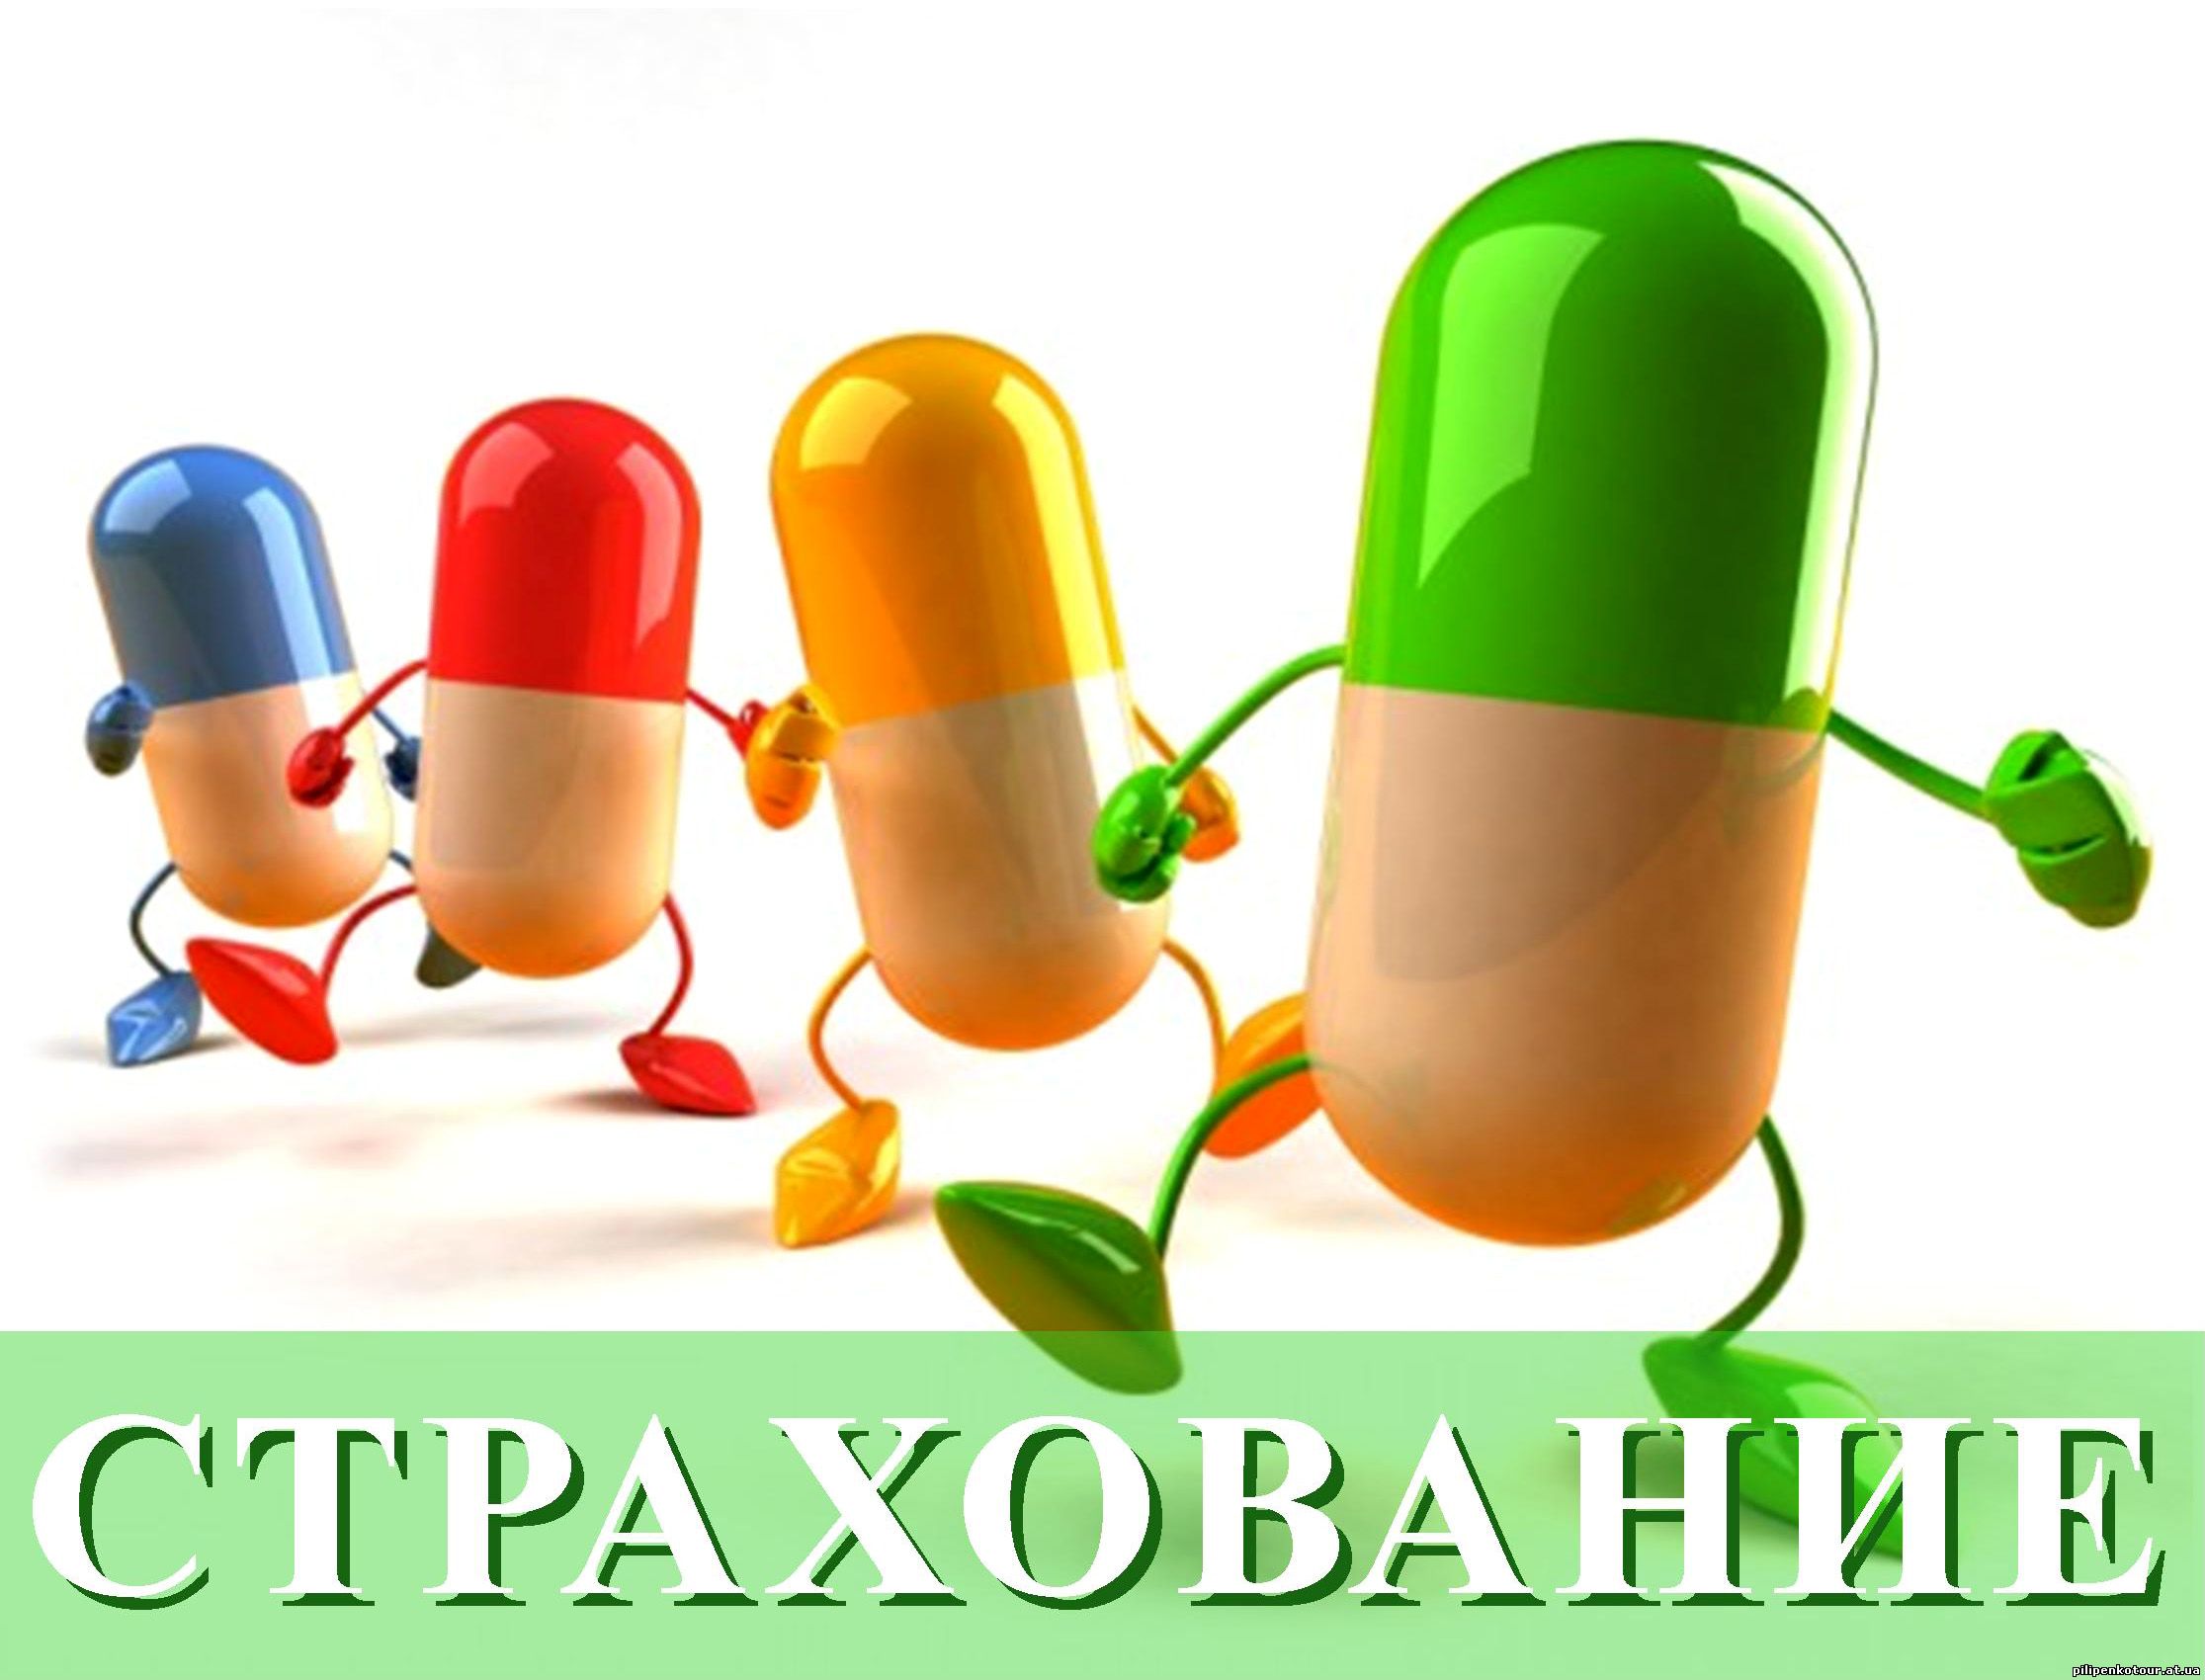 Купить, оформить медицинскую страховку в Харькове для выезда за рубеж